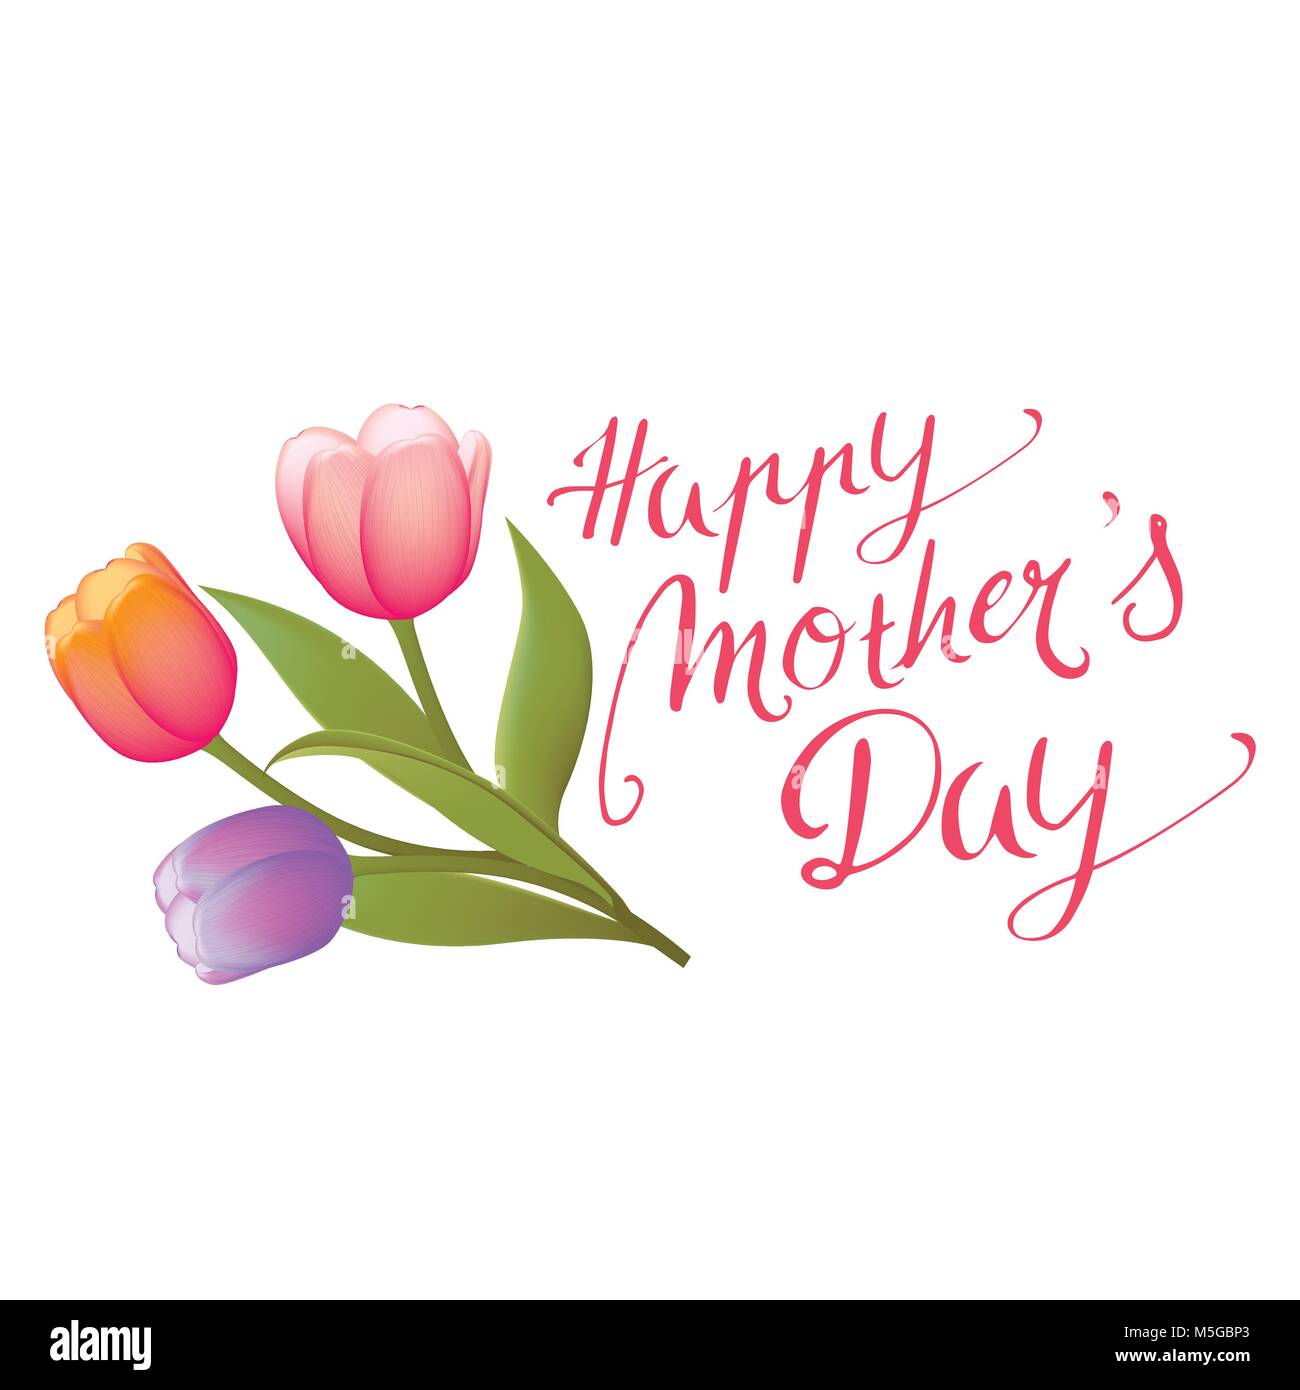 Handwritten Happy Mothers Day vector background Stock Vector